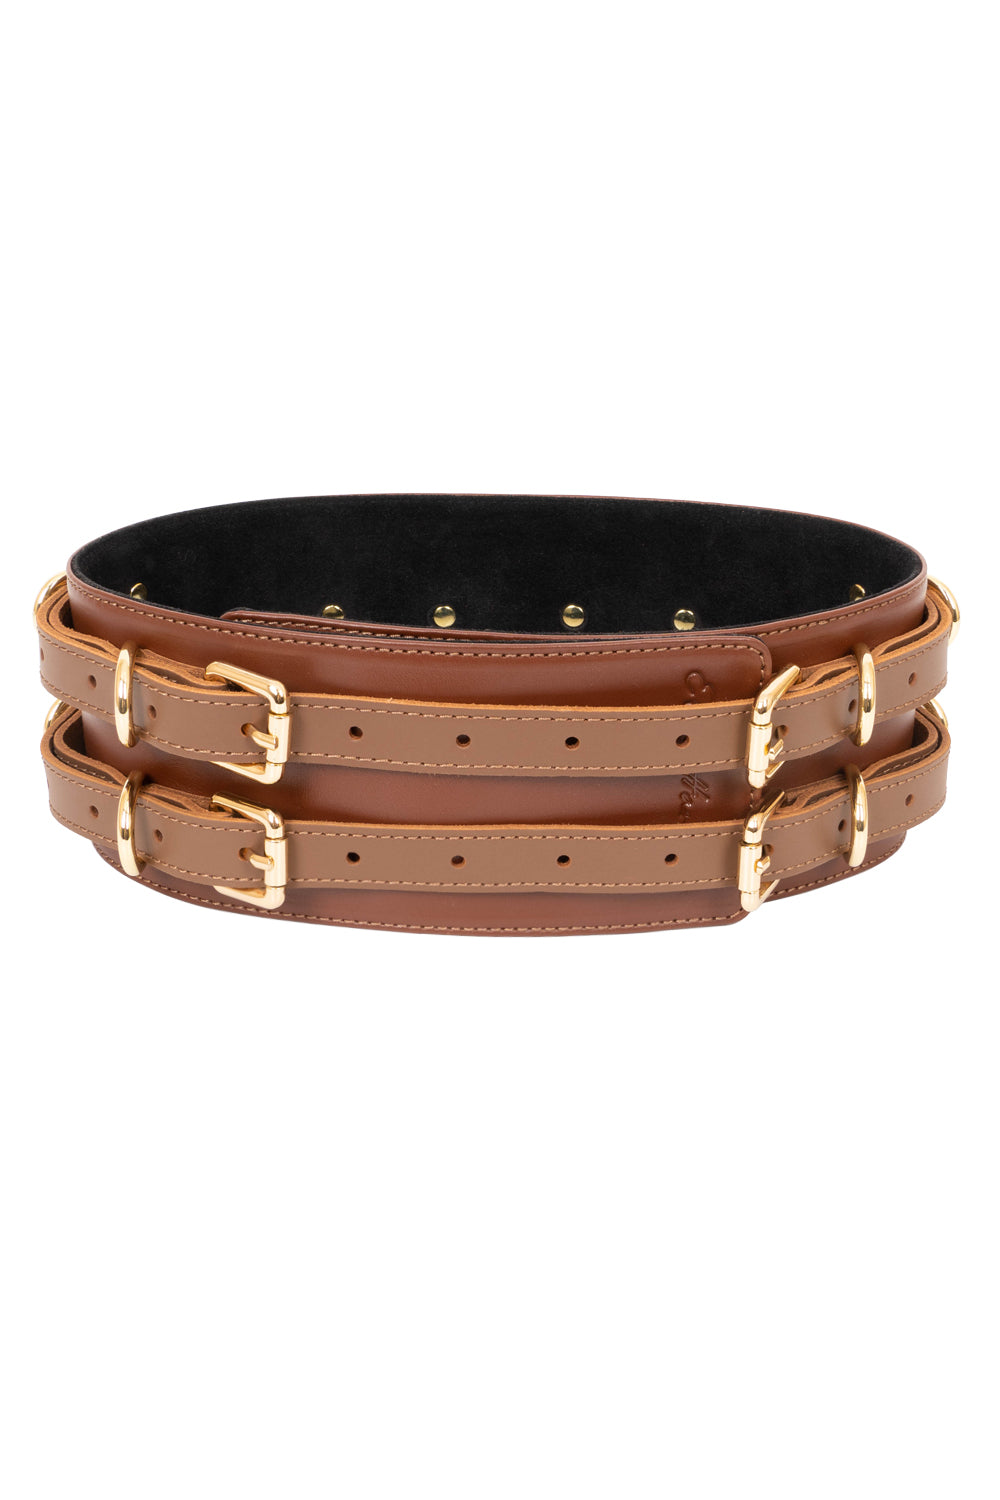 Leather Waist Belt. Brown